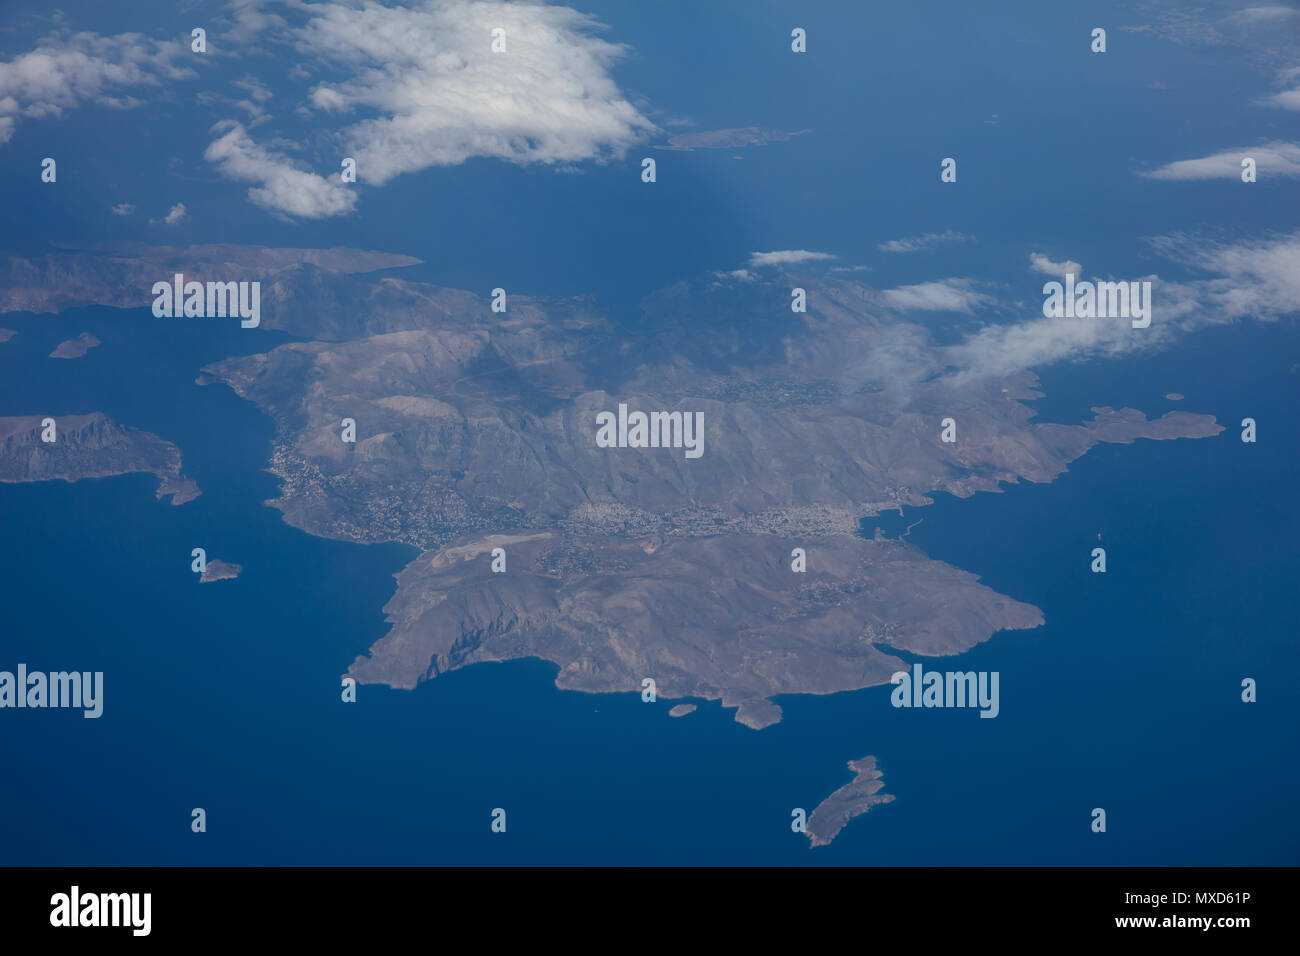 L'île de Kalymnos, Grèce. Vue aérienne d'un avion. Banque D'Images